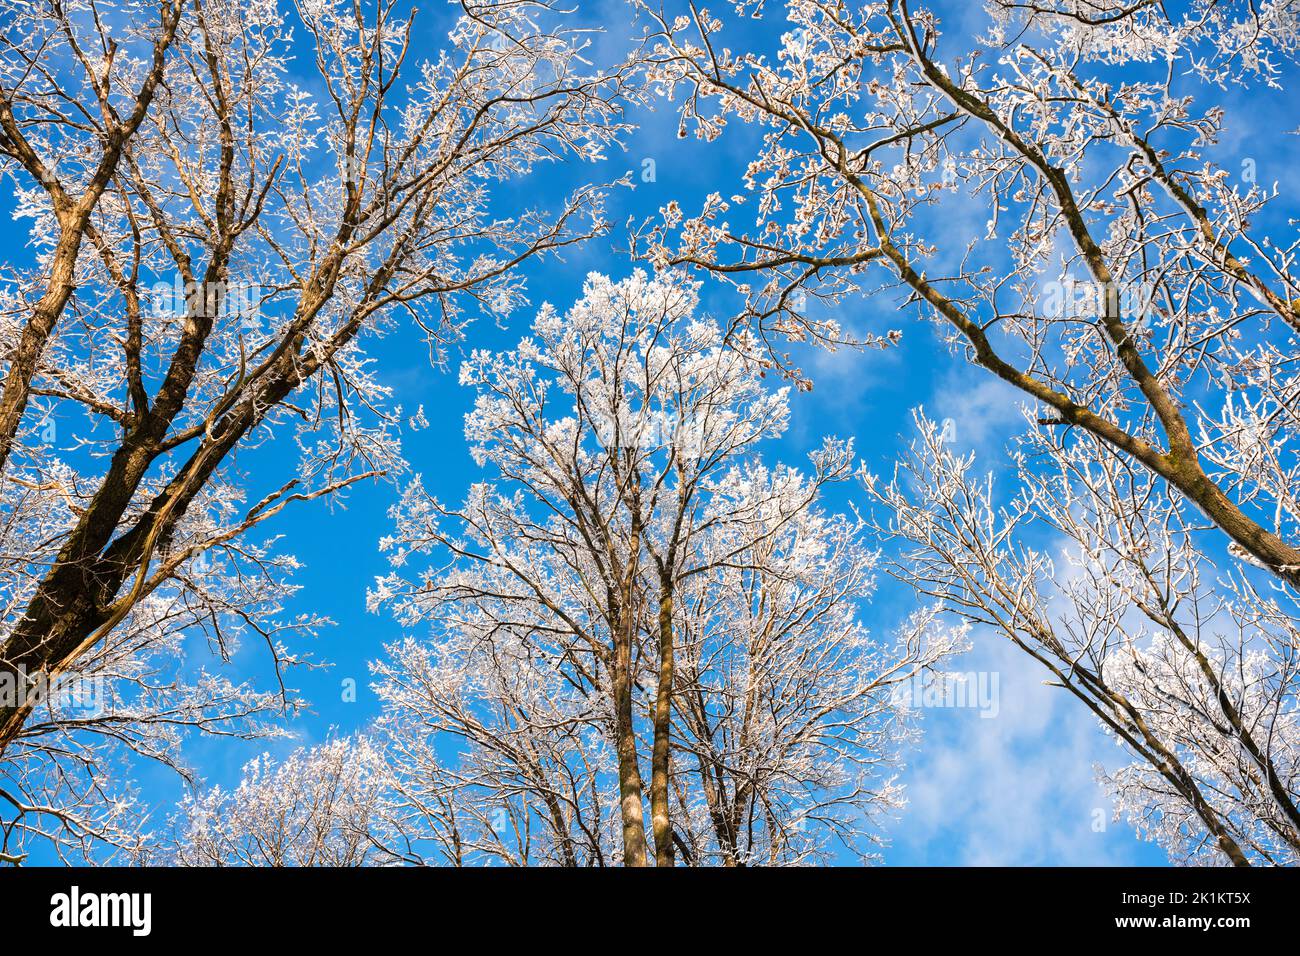 Vue du bas sur un hiver arbres enneigés dans le ciel bleu.Des branches givrée avec des brindilles de givre par temps ensoleillé.Photographie de paysage Banque D'Images